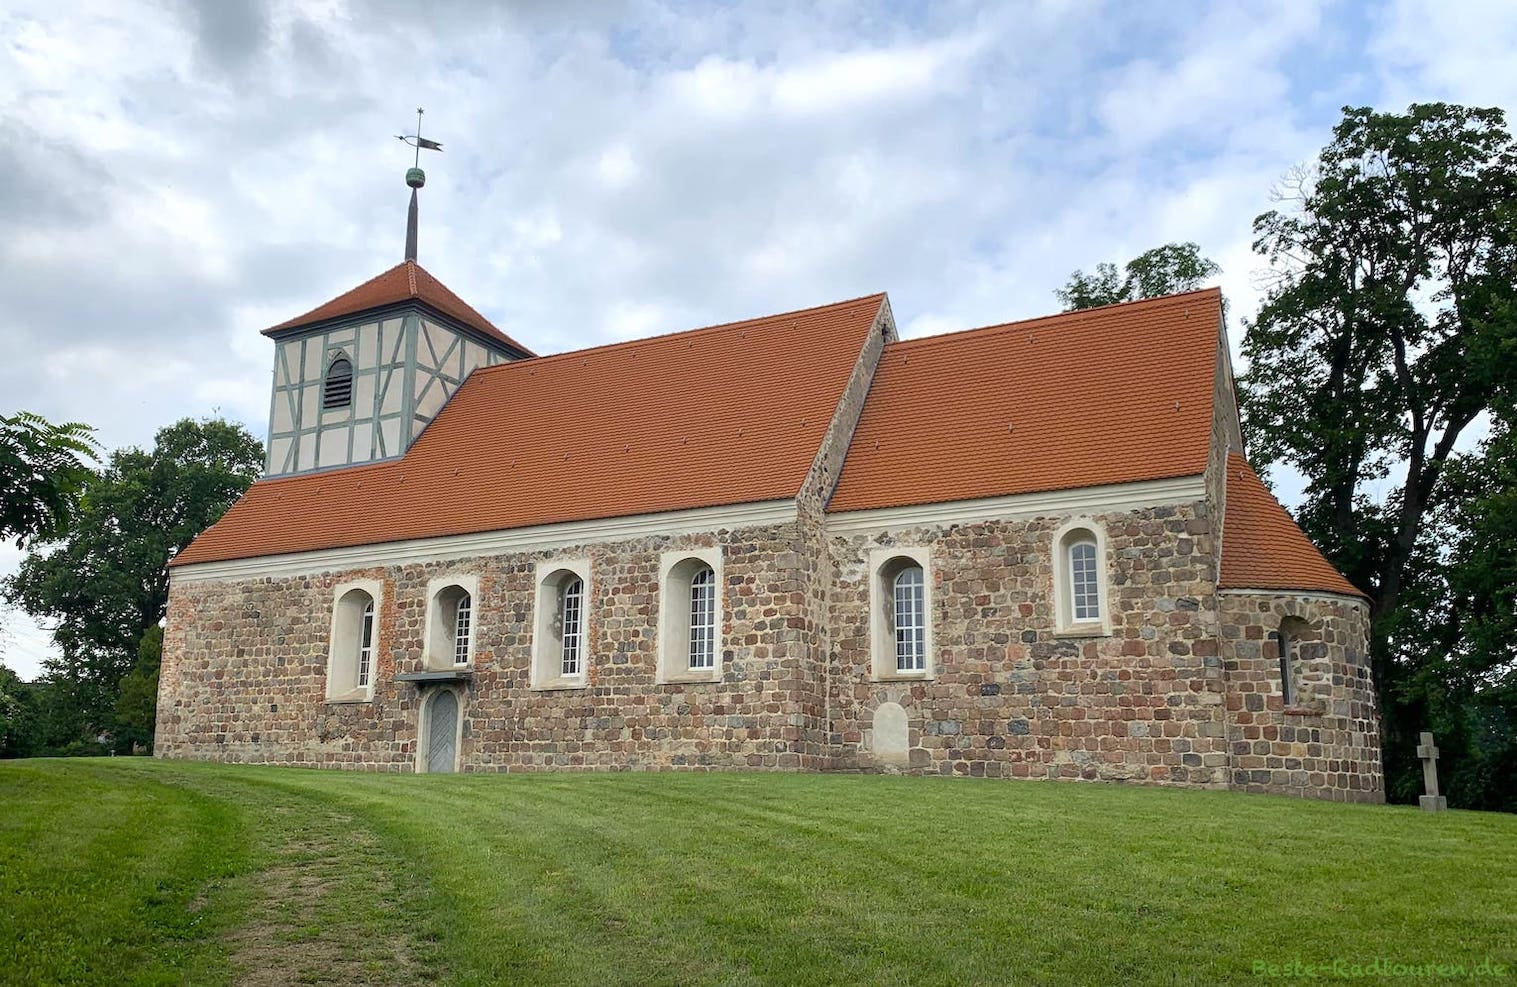 Dorfkirche Gielsdorf, Gemeinde Altlandsberg, Foto von der Seite